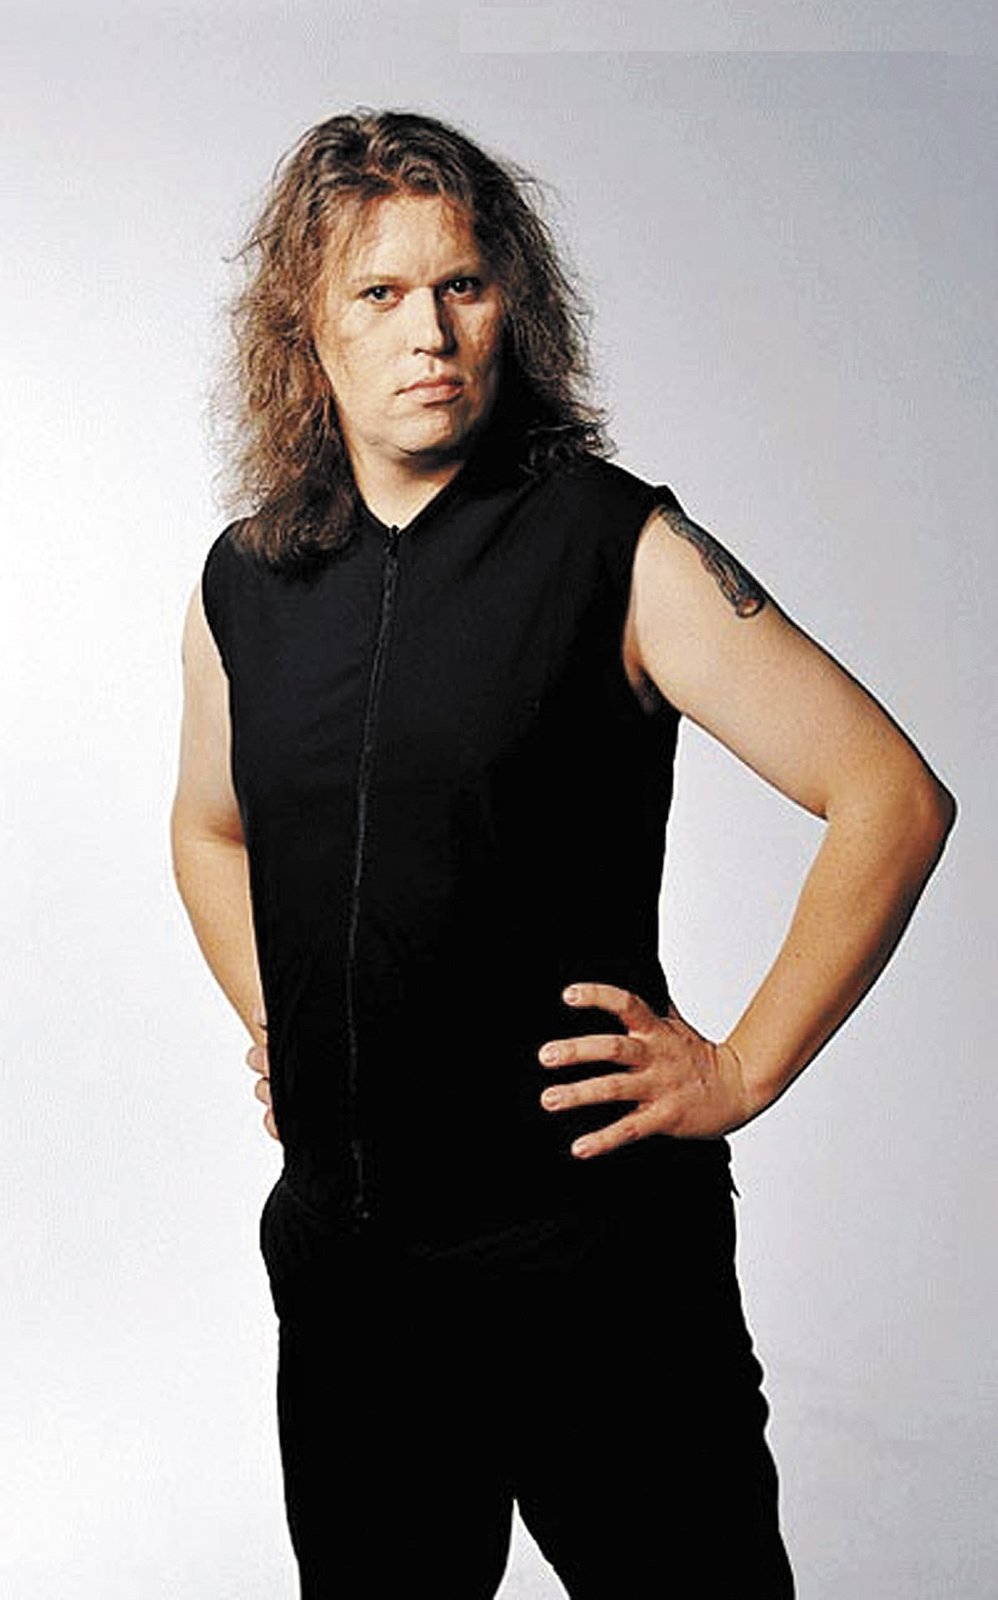 2004: Takhle vypadal zpěvák na začátku své kariéry. Kvůli nemoci ale odešel z finské metalové skupiny Stratovarius.